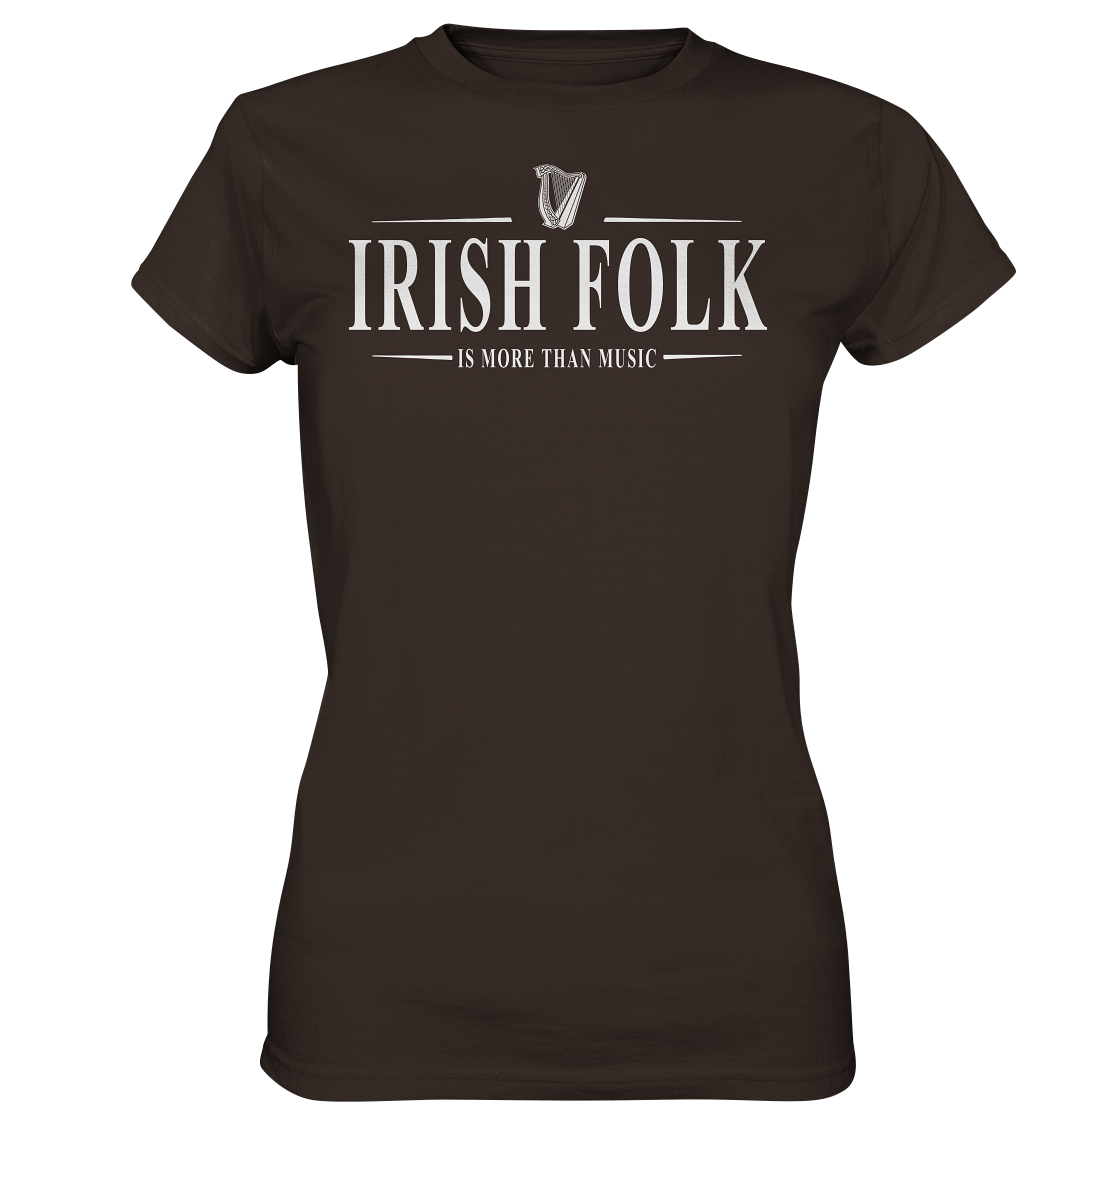 Irish Folk "Is More Than Music" - Ladies Premium Shirt